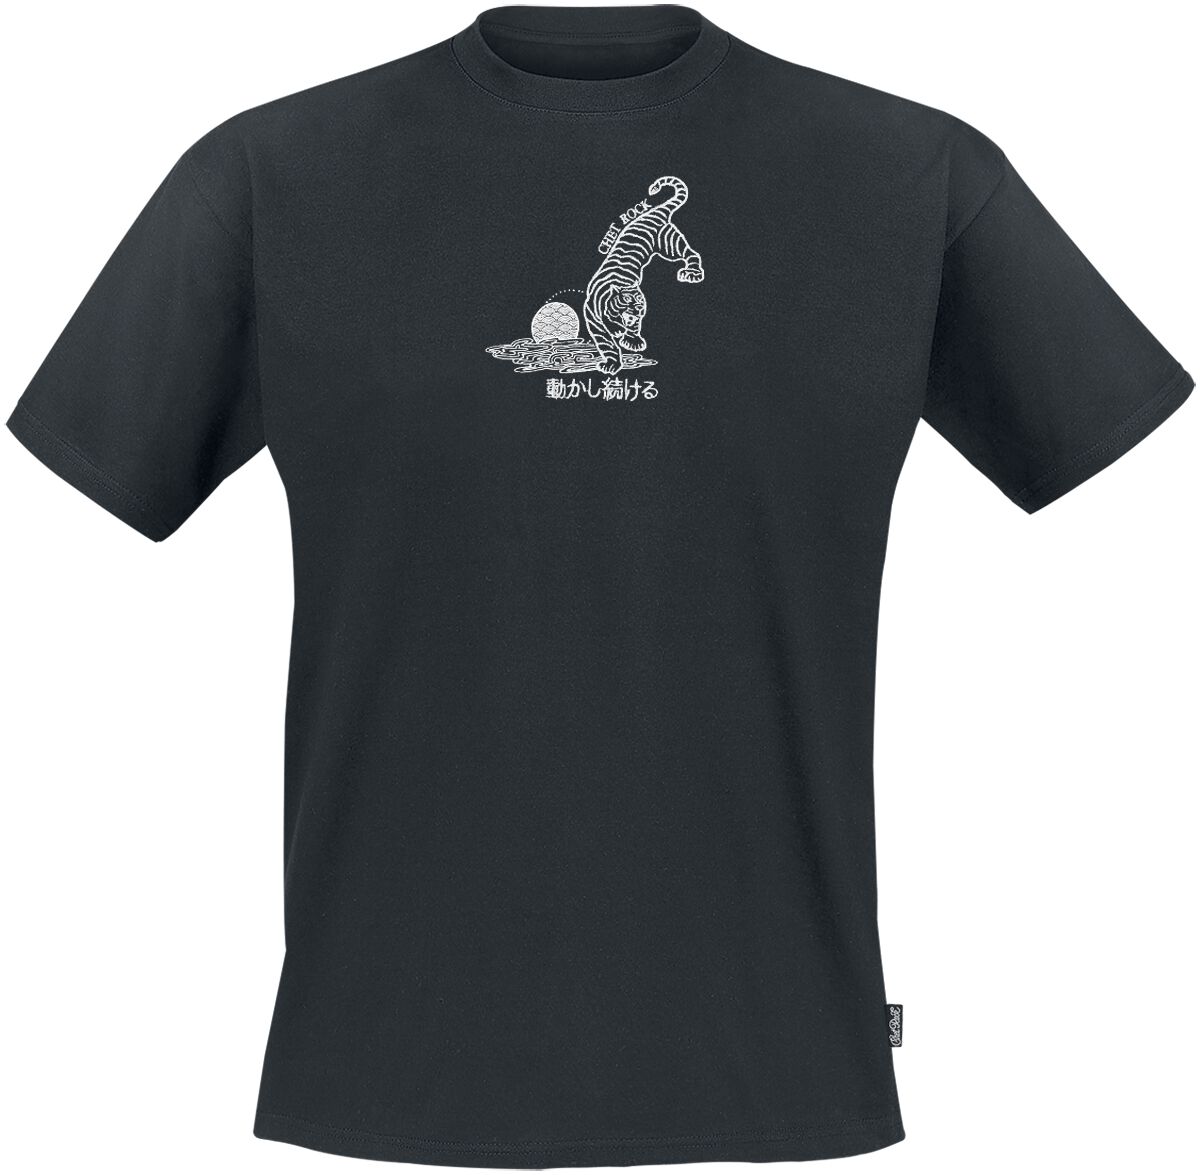 Chet Rock T-Shirt - Crouching Tiger - S bis XXL - für Männer - Größe M - schwarz